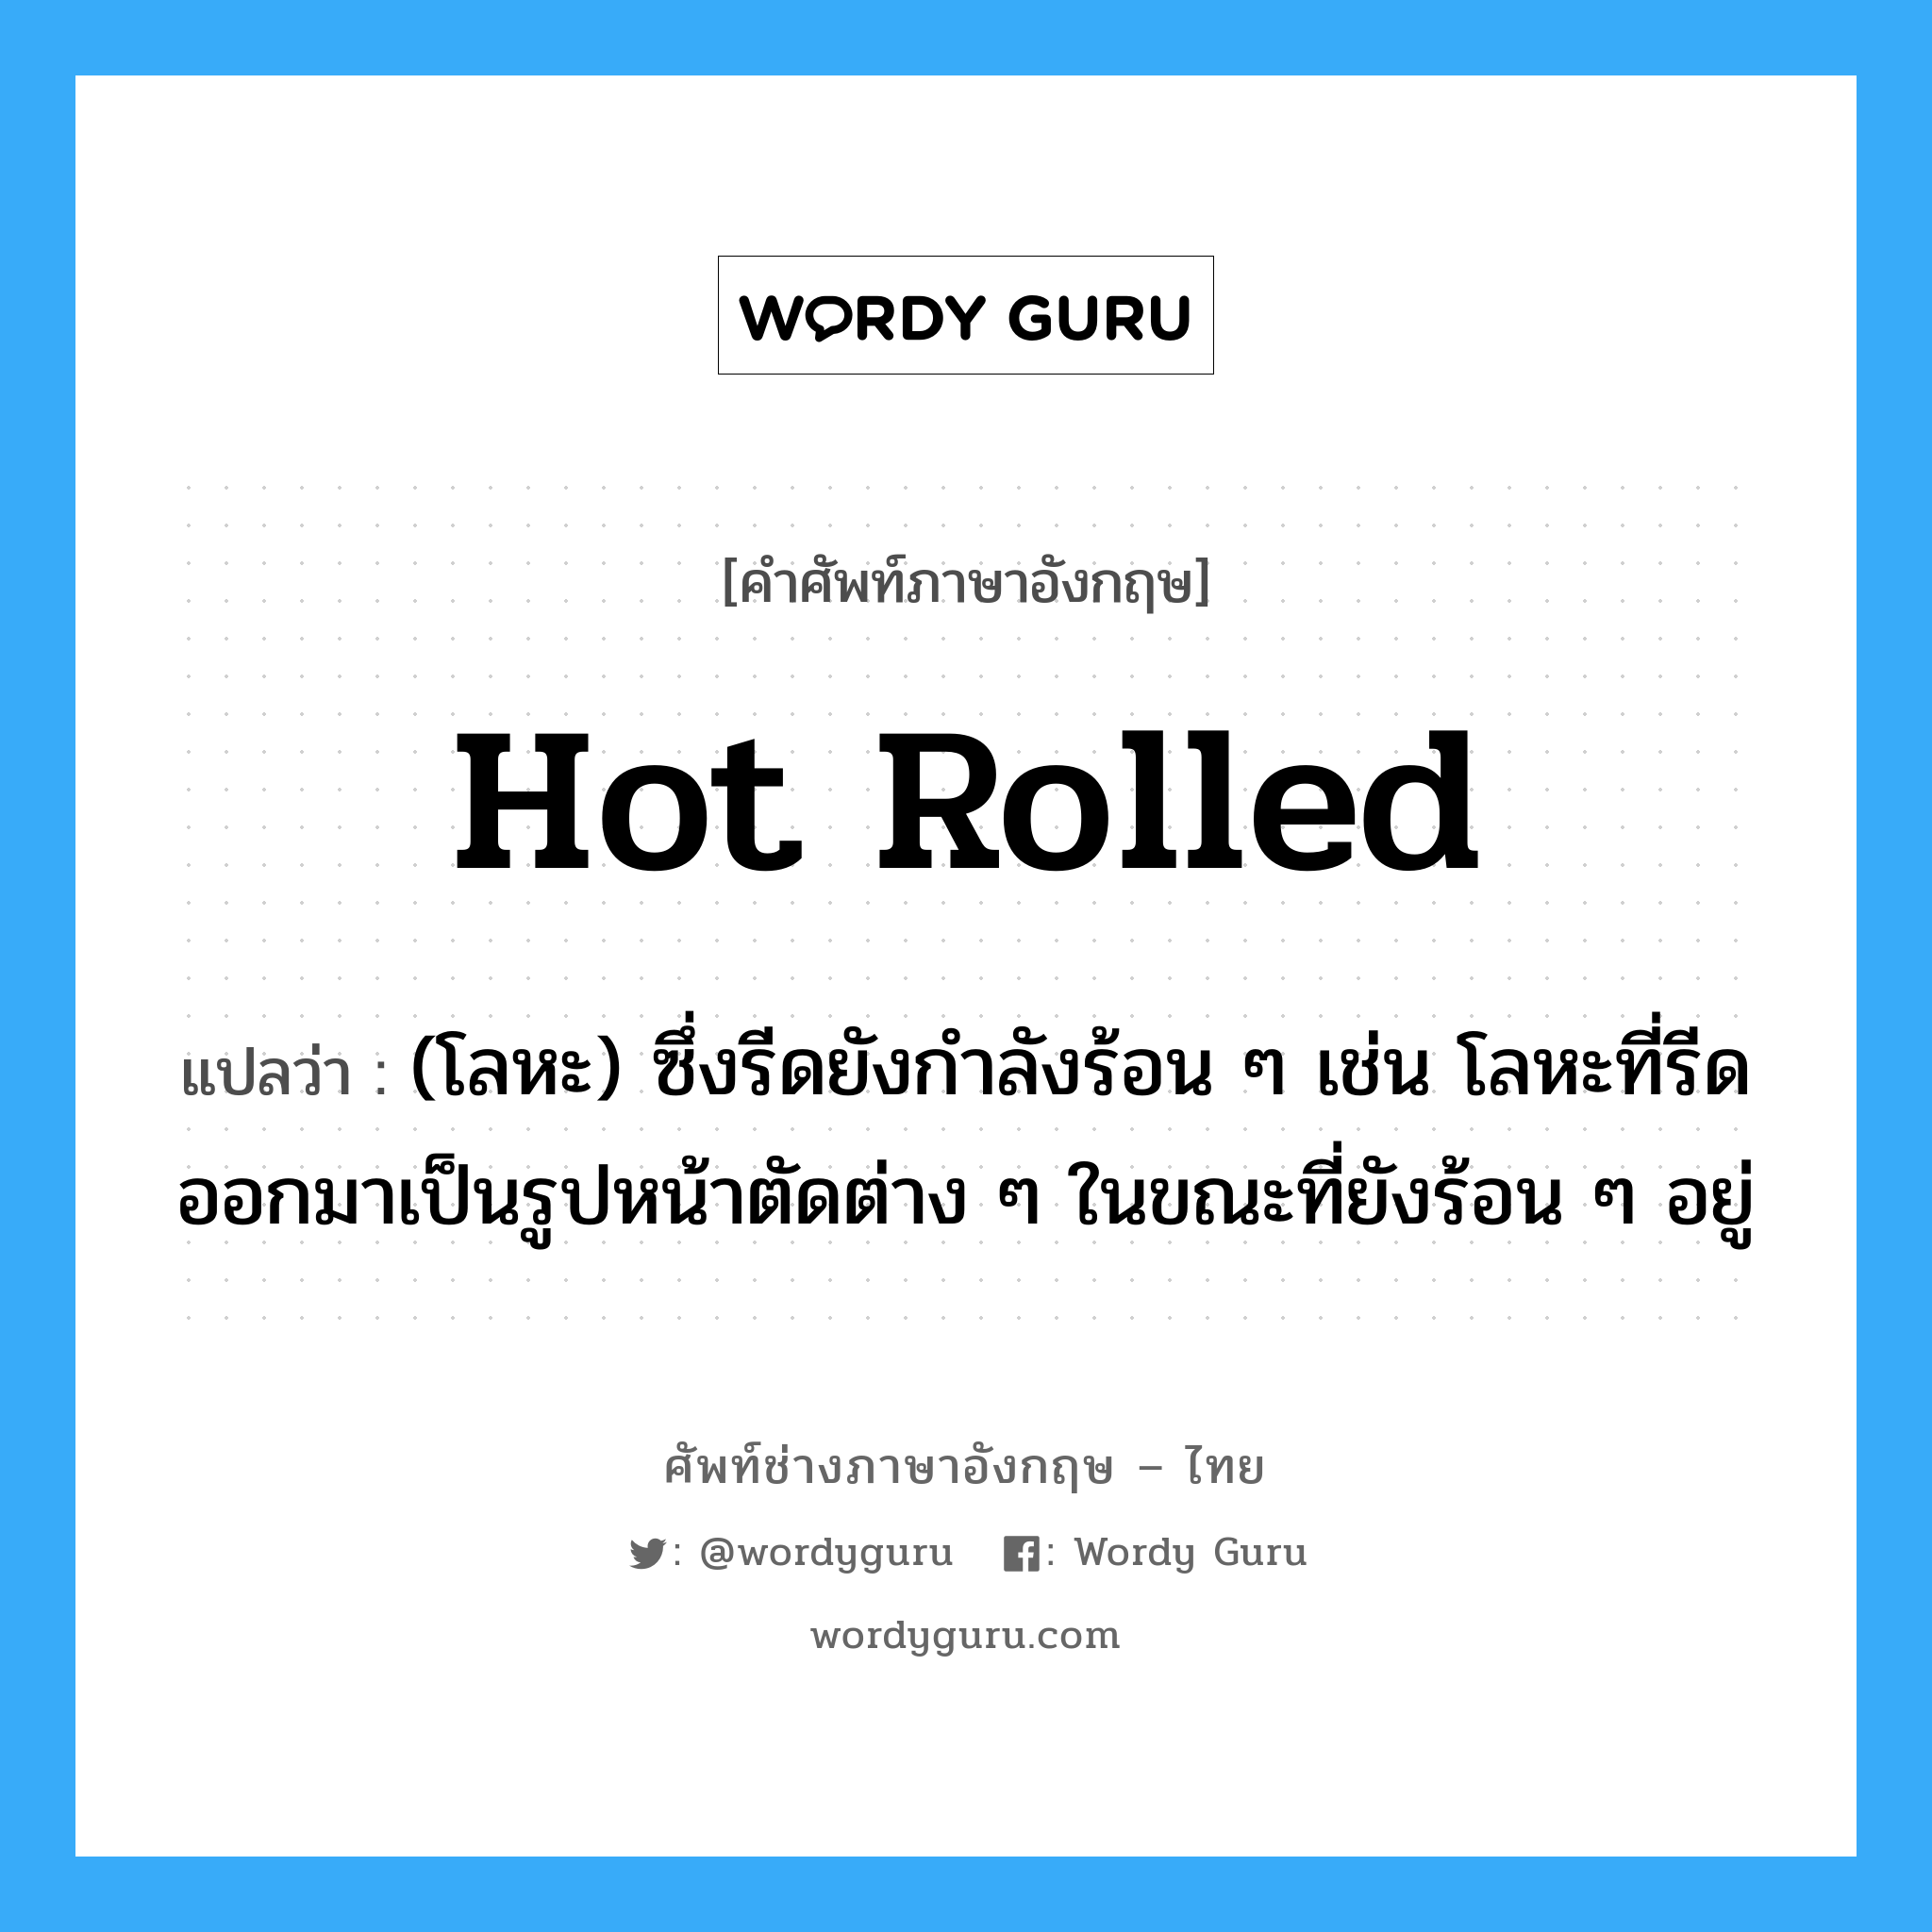 hot rolled แปลว่า?, คำศัพท์ช่างภาษาอังกฤษ - ไทย hot rolled คำศัพท์ภาษาอังกฤษ hot rolled แปลว่า (โลหะ) ซึ่งรีดยังกำลังร้อน ๆ เช่น โลหะที่รีดออกมาเป็นรูปหน้าตัดต่าง ๆ ในขณะที่ยังร้อน ๆ อยู่